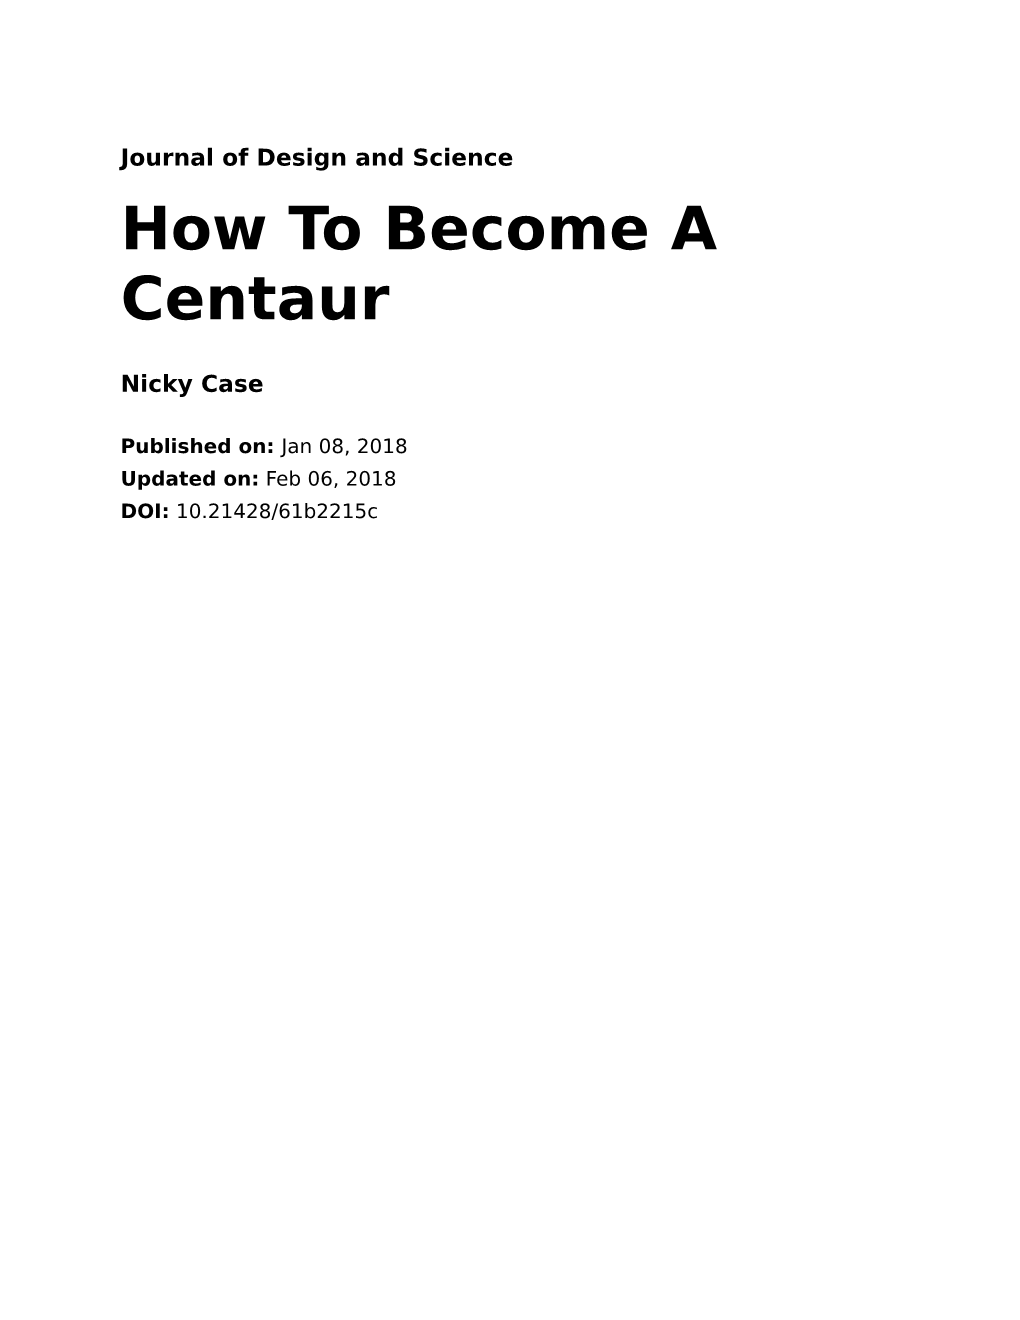 How to Become a Centaur